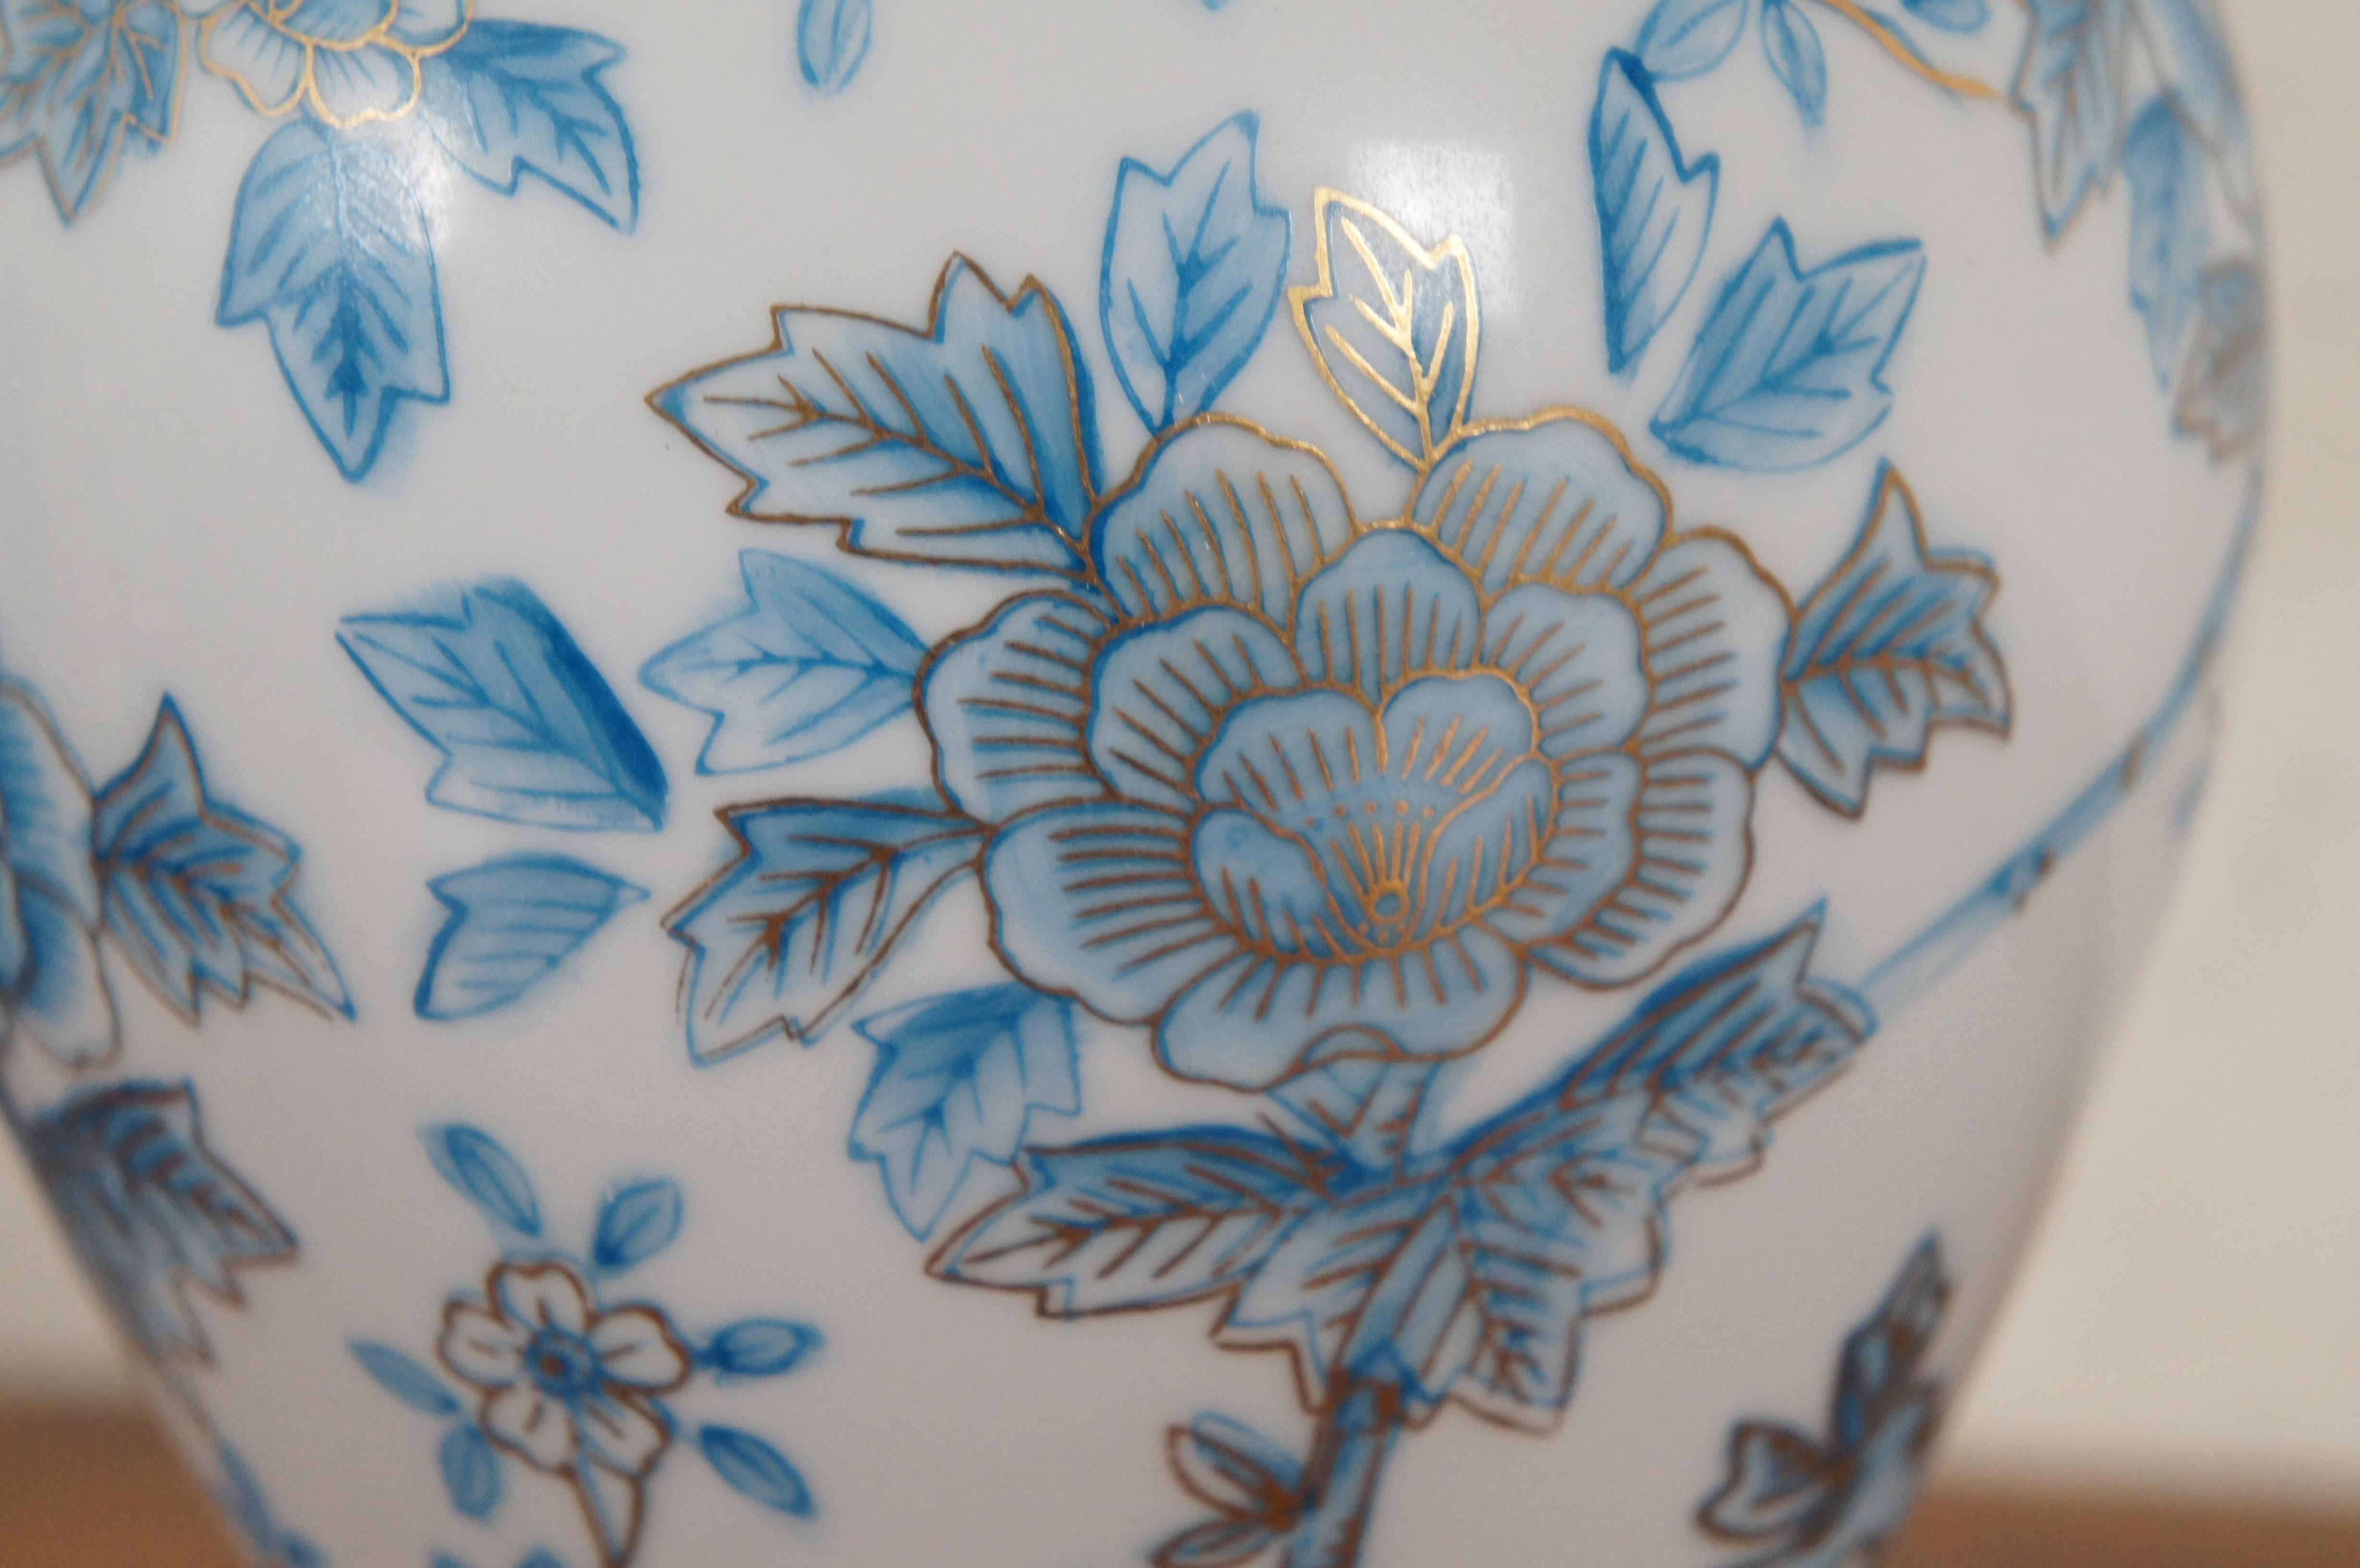 Jarre à gingembre à couvercle en porcelaine bleue et blanche du Japon, 12